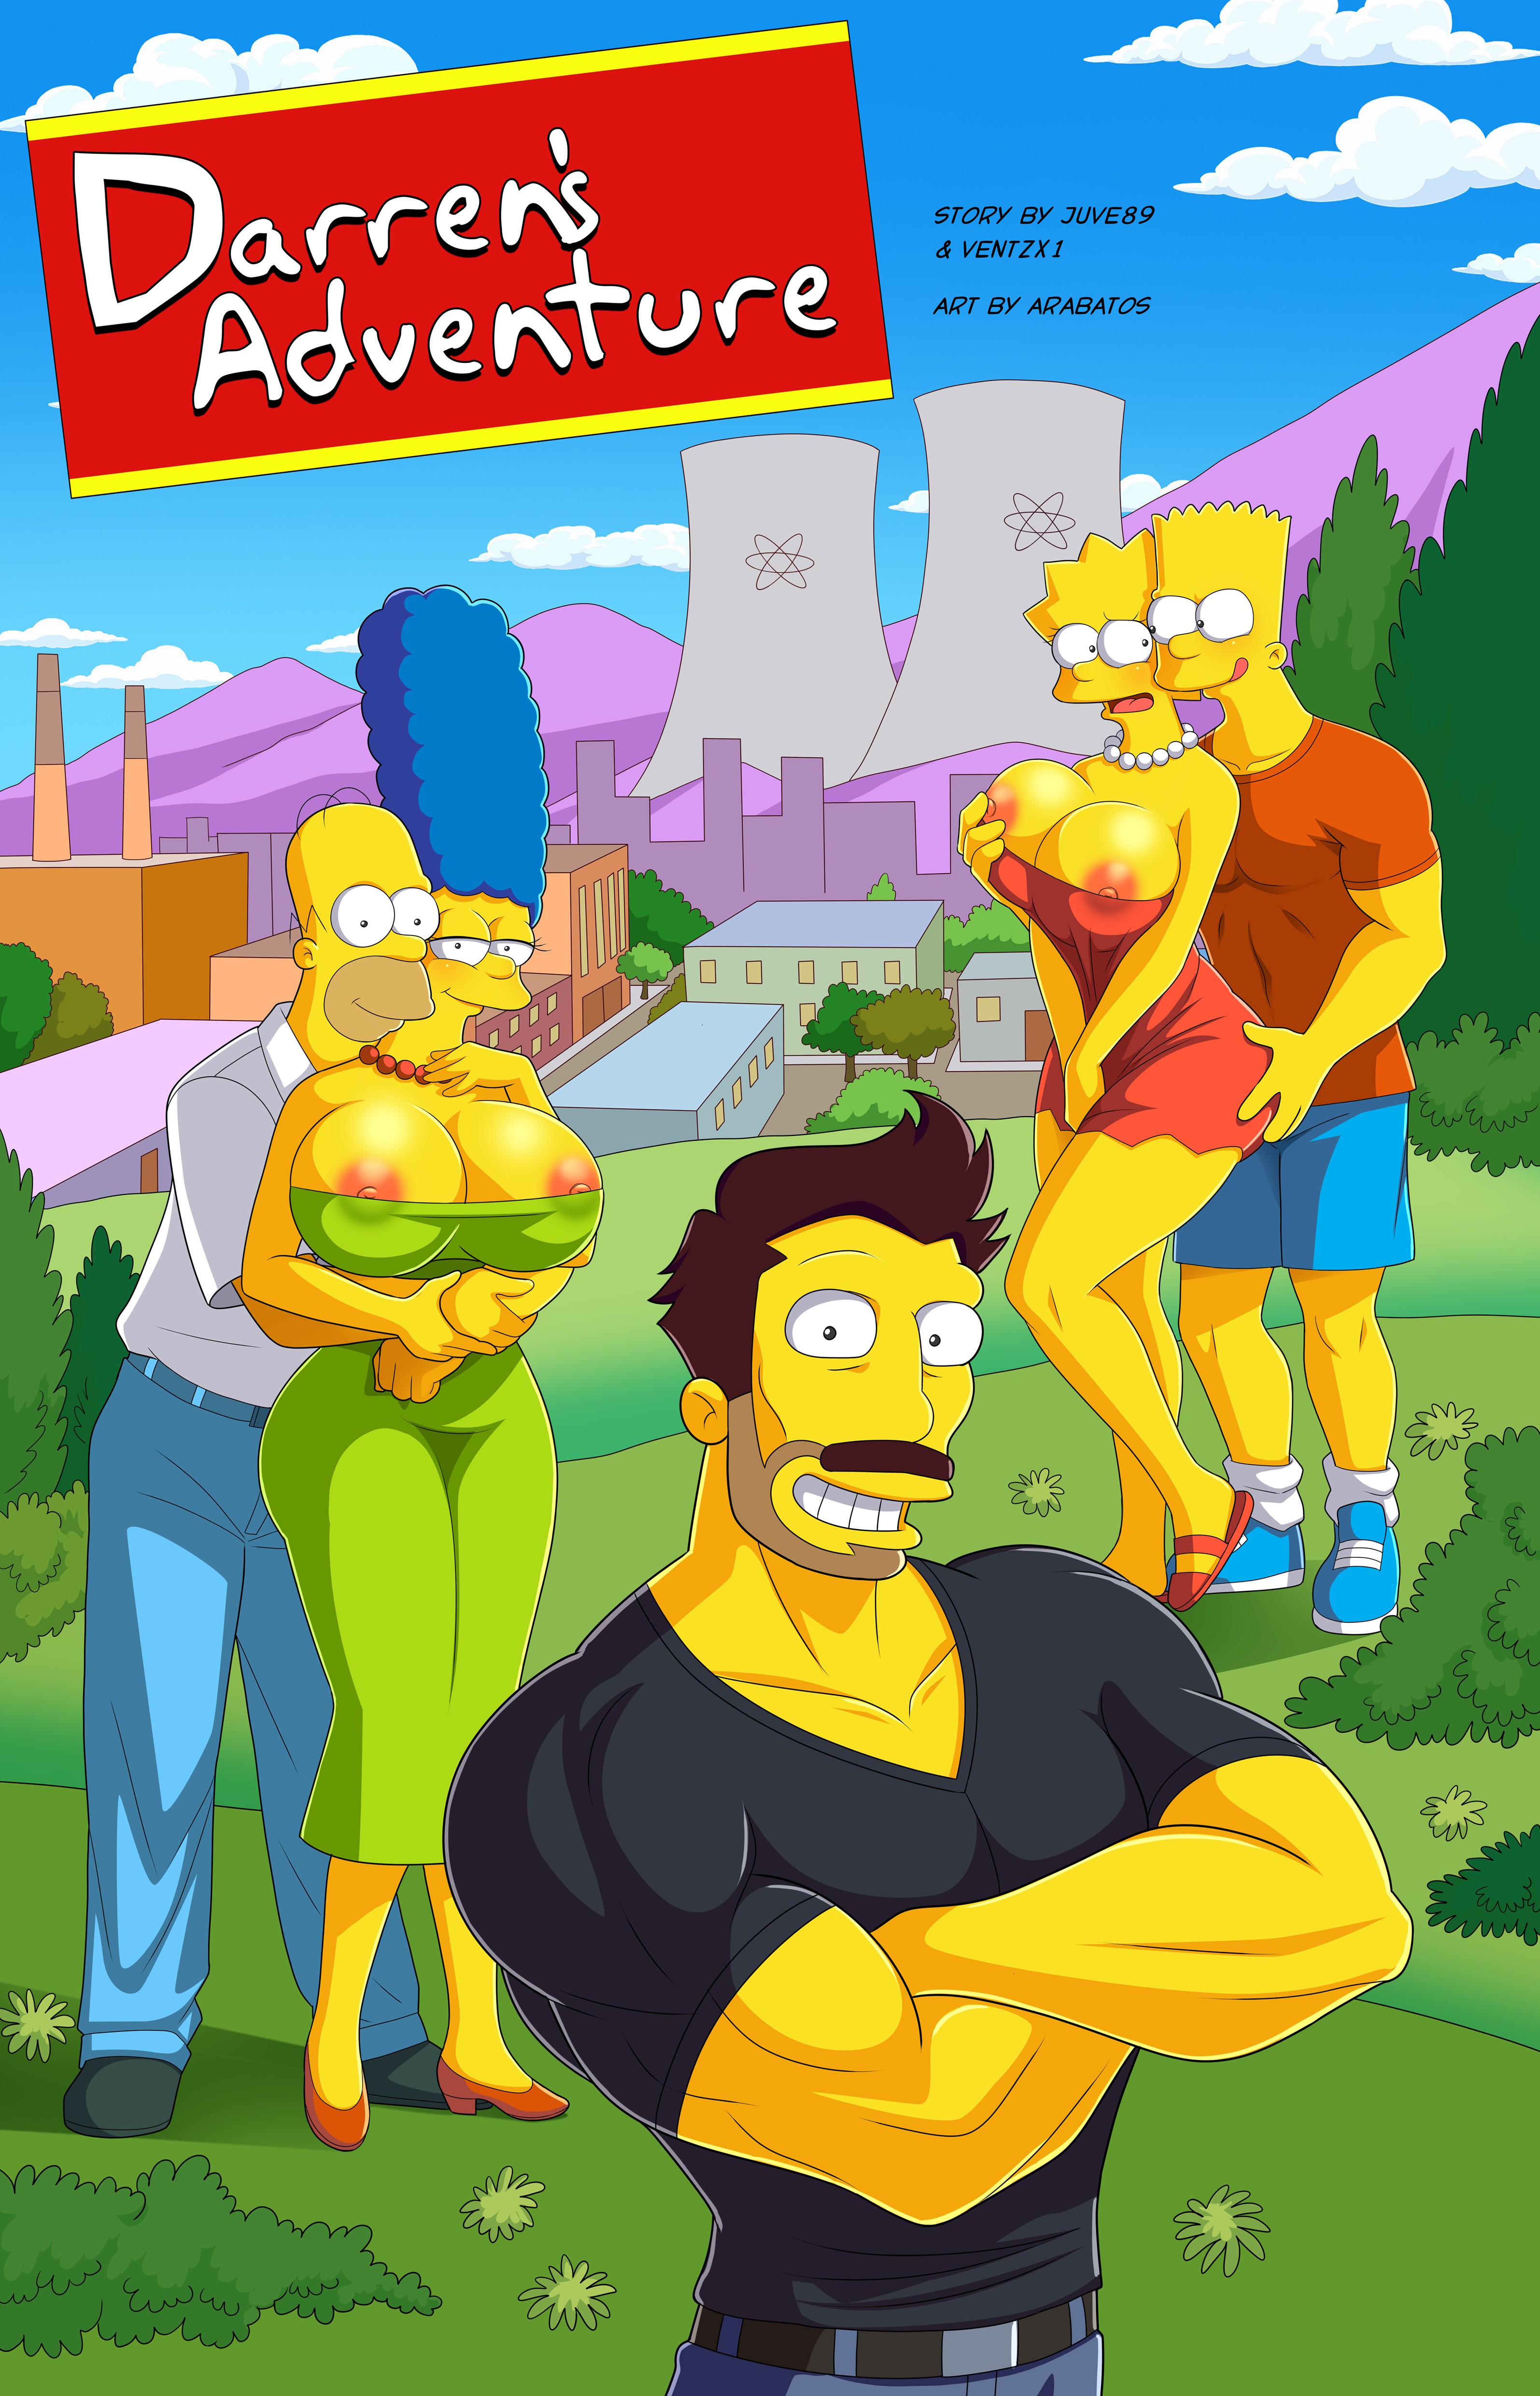 Updated Arabatos - Darren's Adventure 1-10 - 148 pages - Simpsons XXX comic